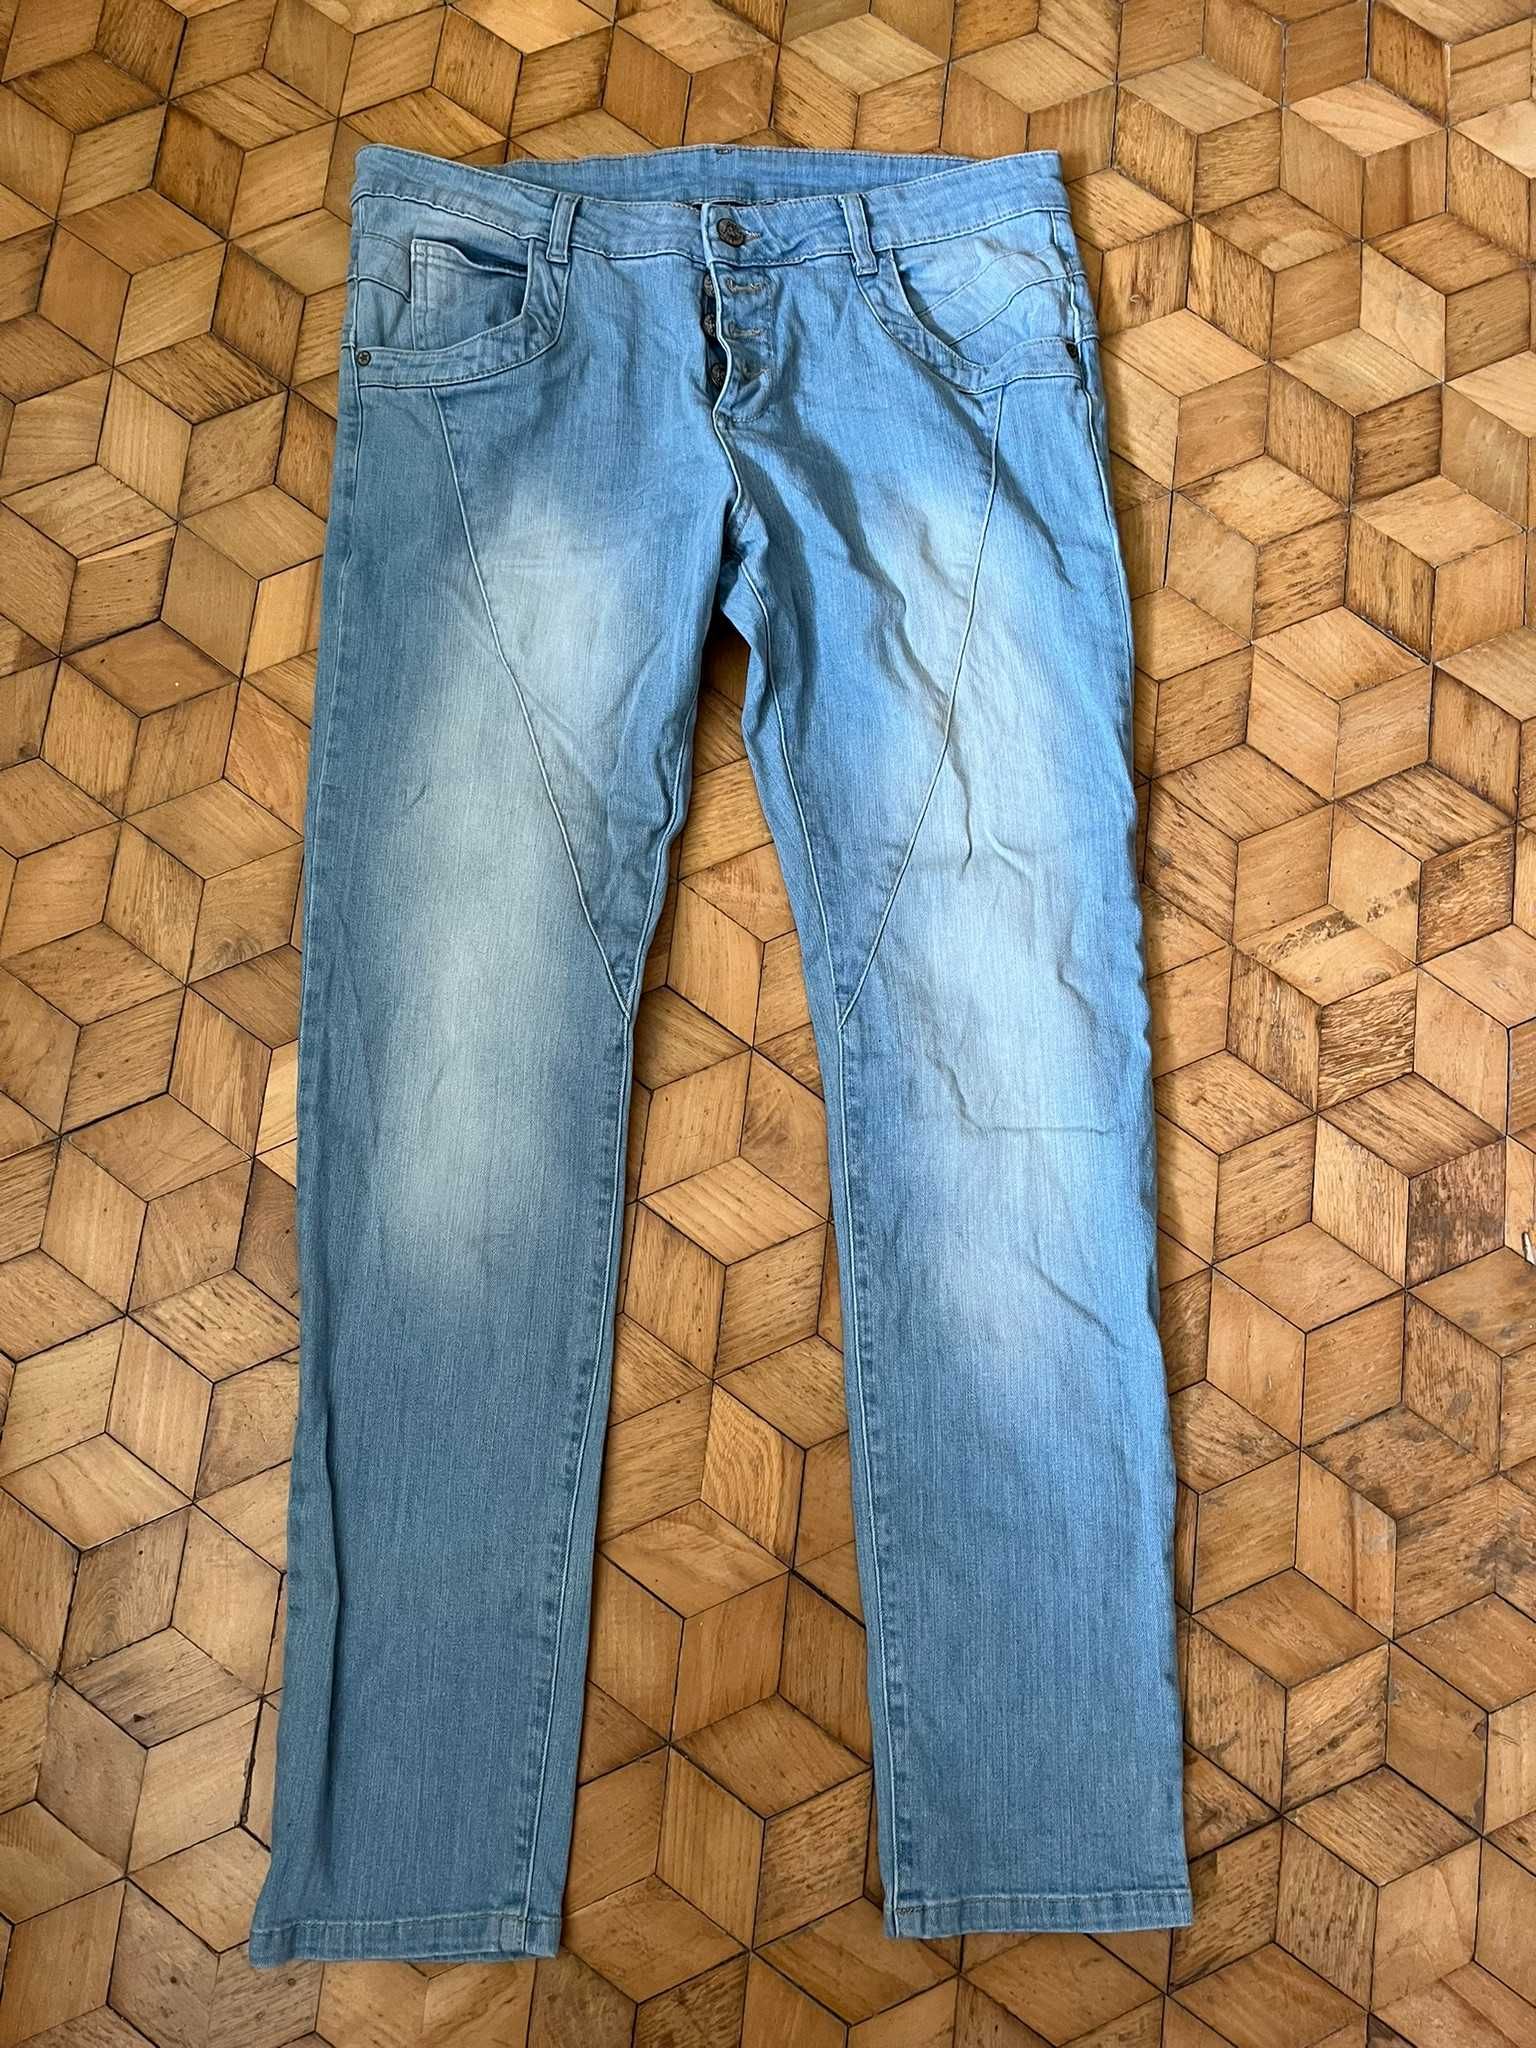 Spodnie KappAhl XL jeansowe kobiece jasne